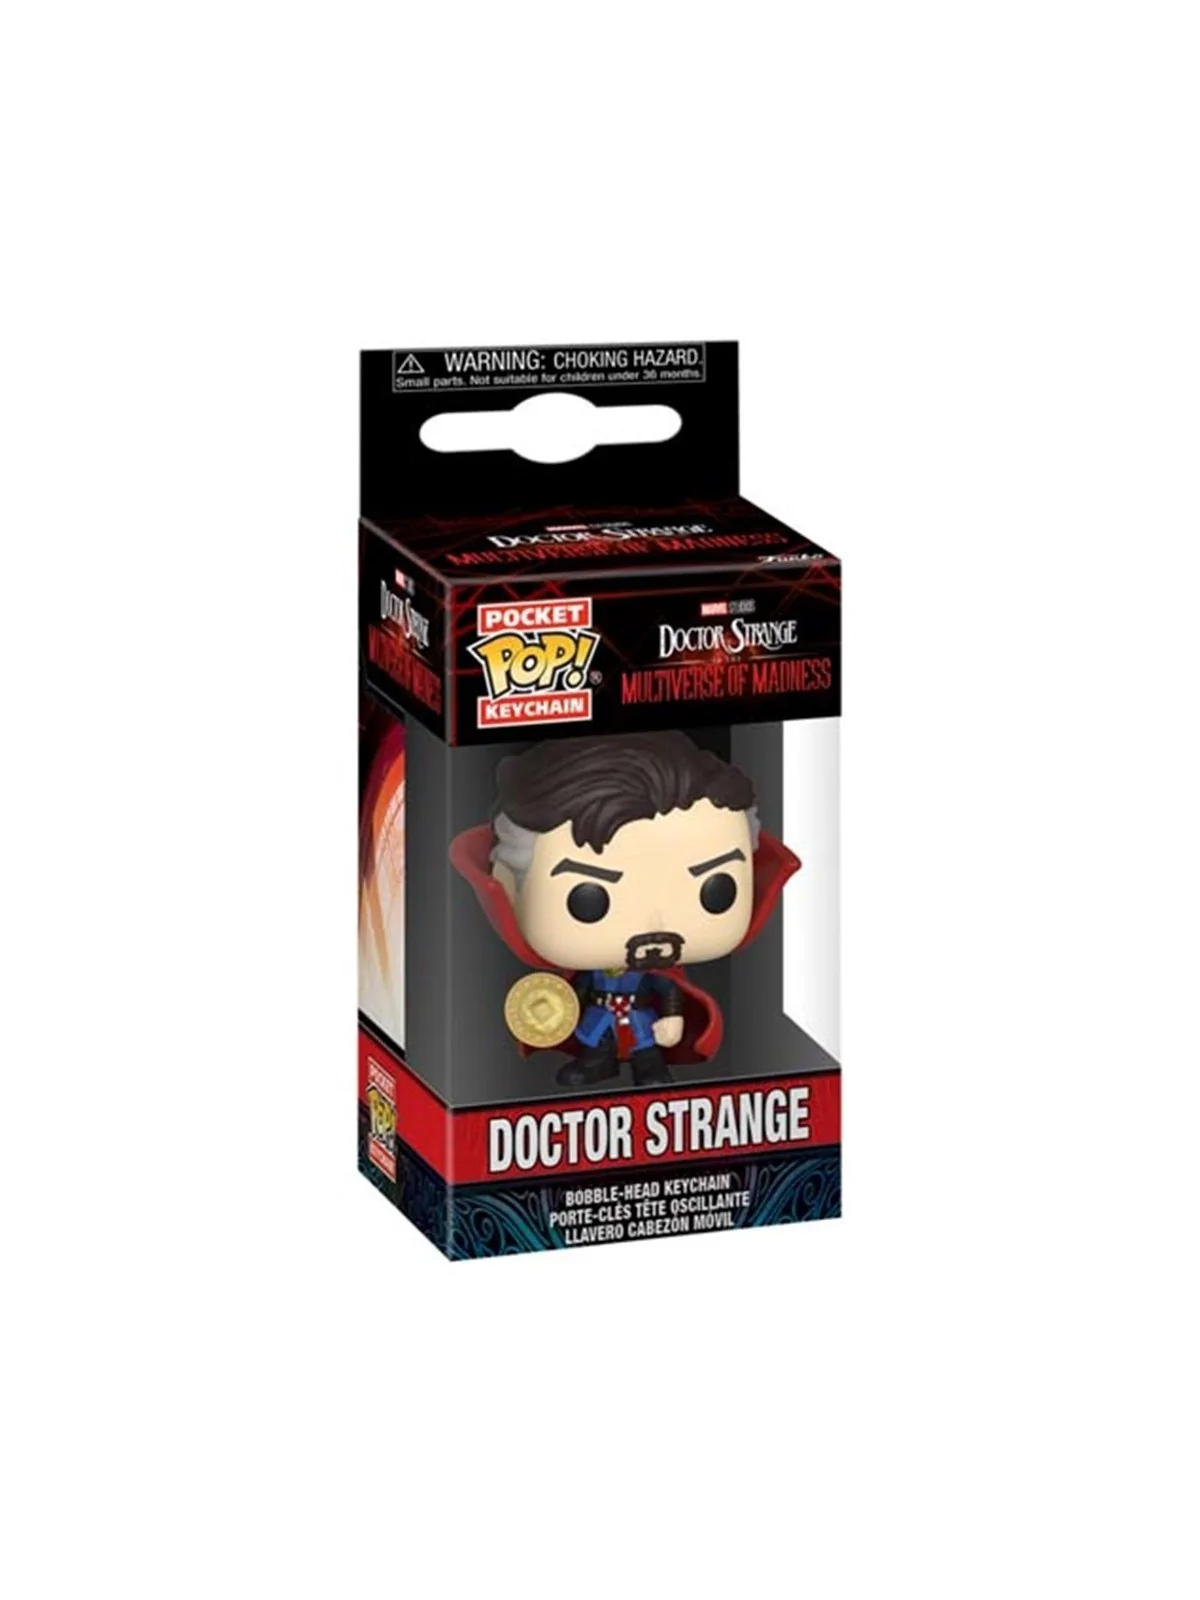 Comprar Funko POP! Llavero Doctor Strange Multiverso de la Locura bara